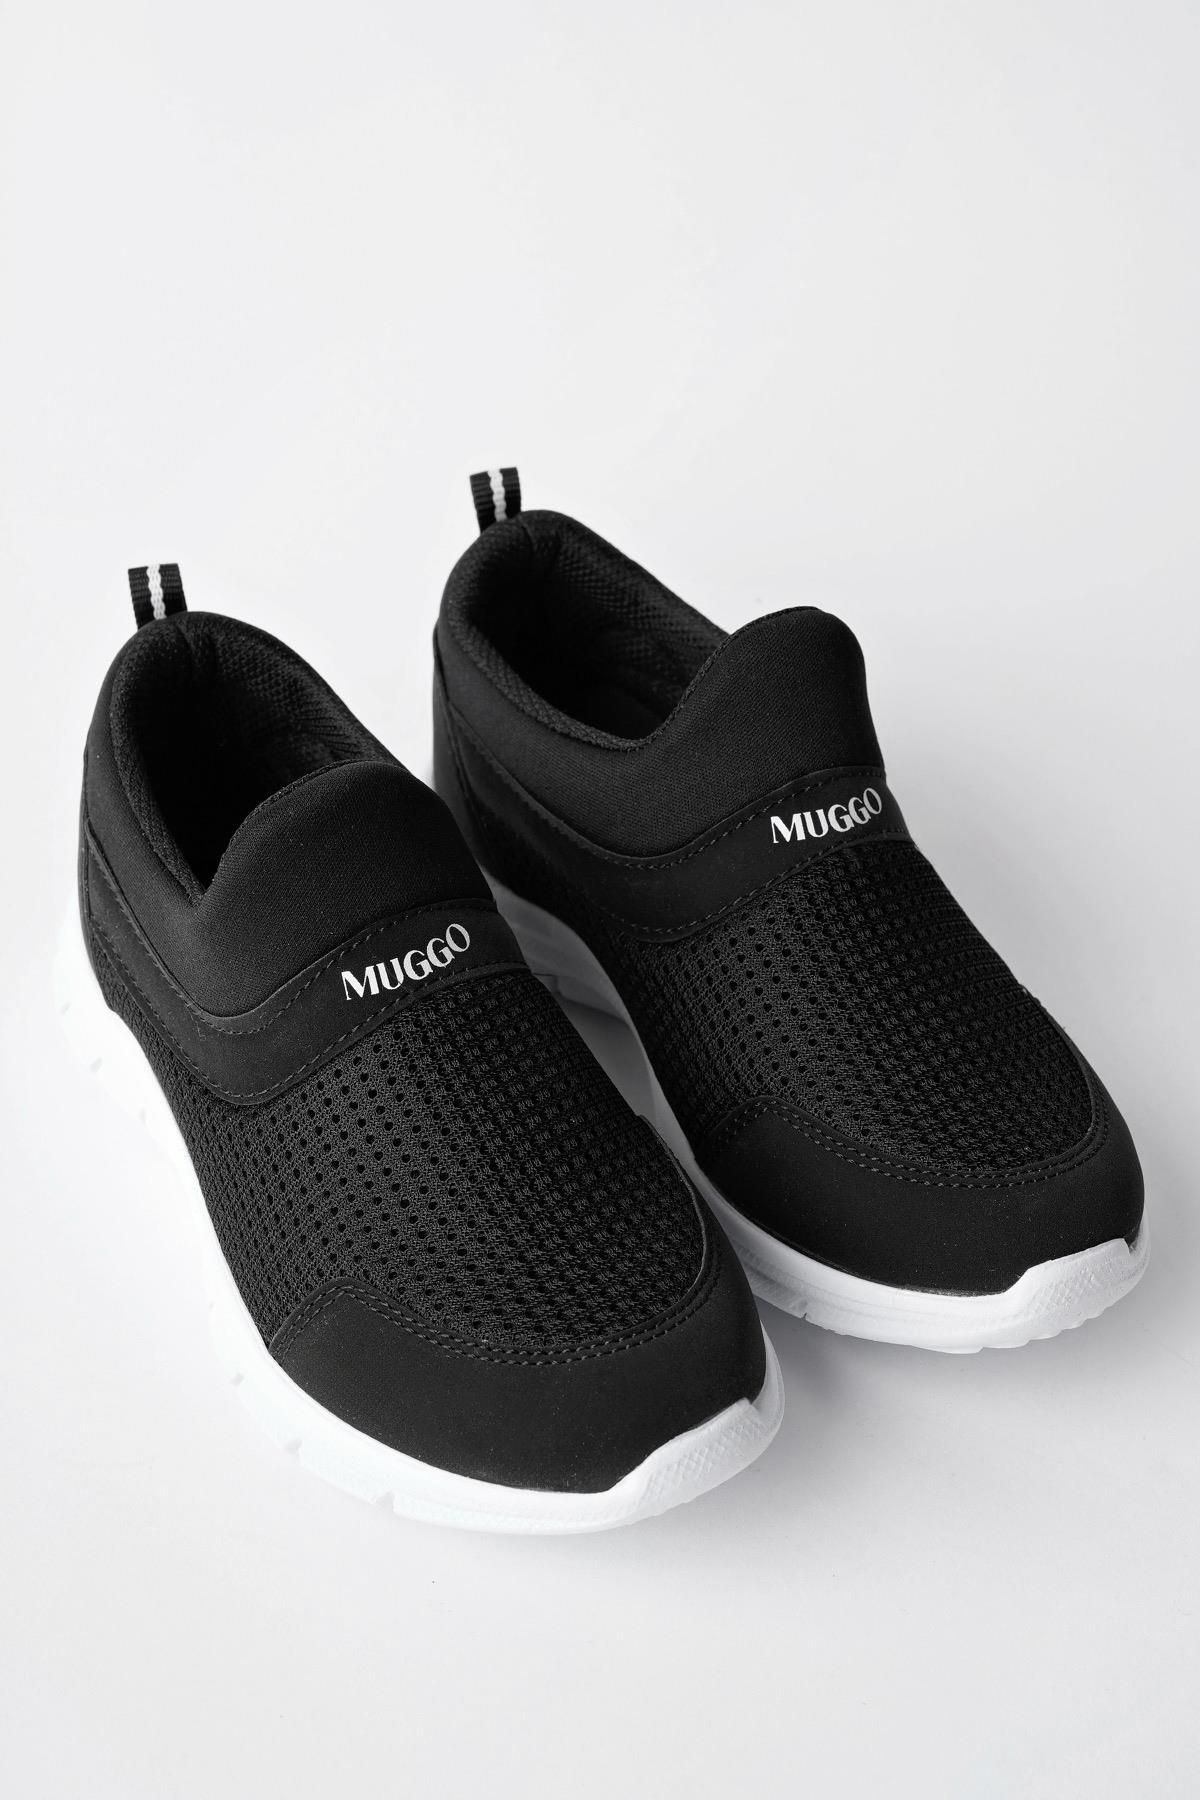 Muggo Pico Garantili Unisex Çocuk Bağcıksız Rahat Esnek Günlük Sneaker Spor Ayakkabı